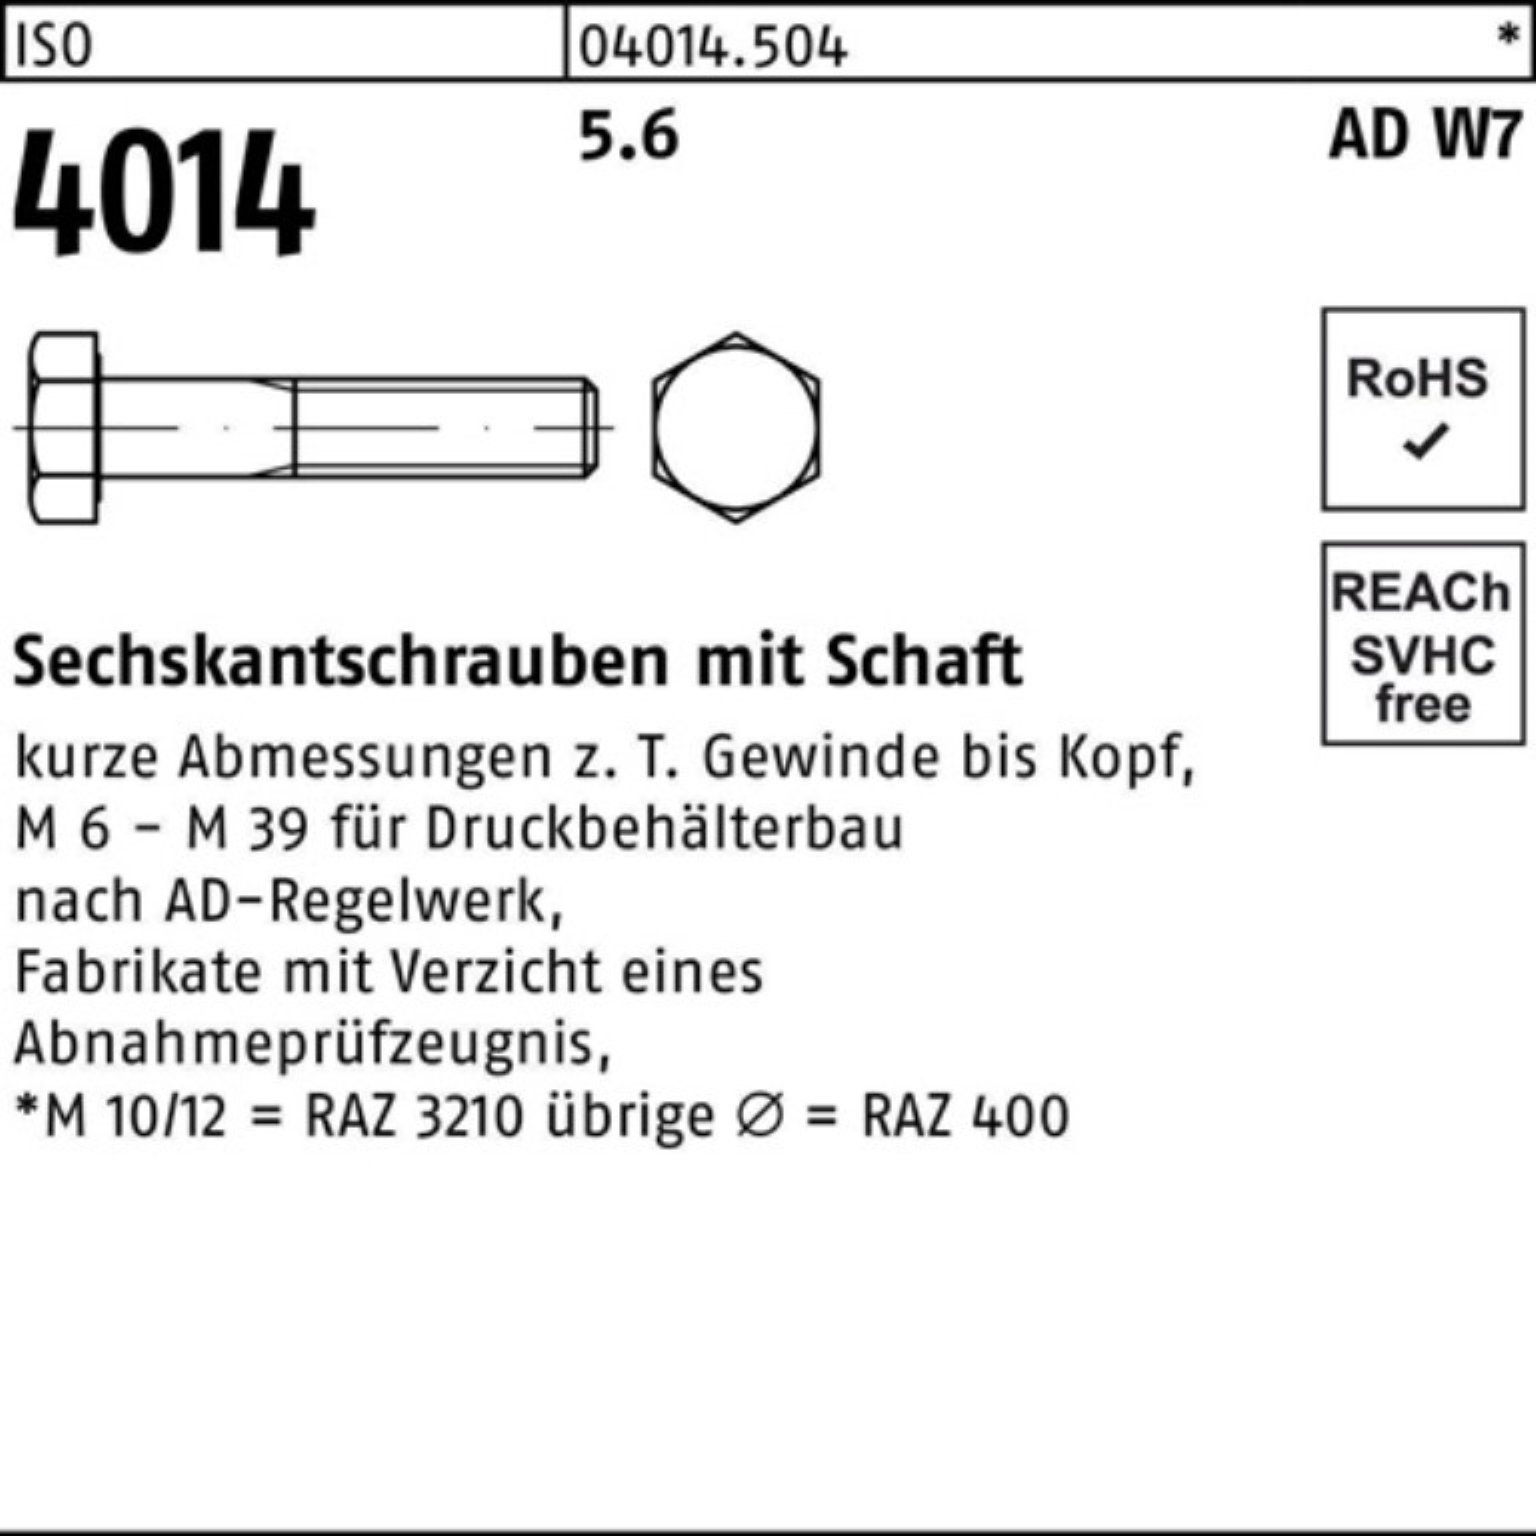 Bufab Sechskantschraube 100er Pack Sechskantschraube W7 5.6 ISO M24x 4014 Schaft 10 Stück 150